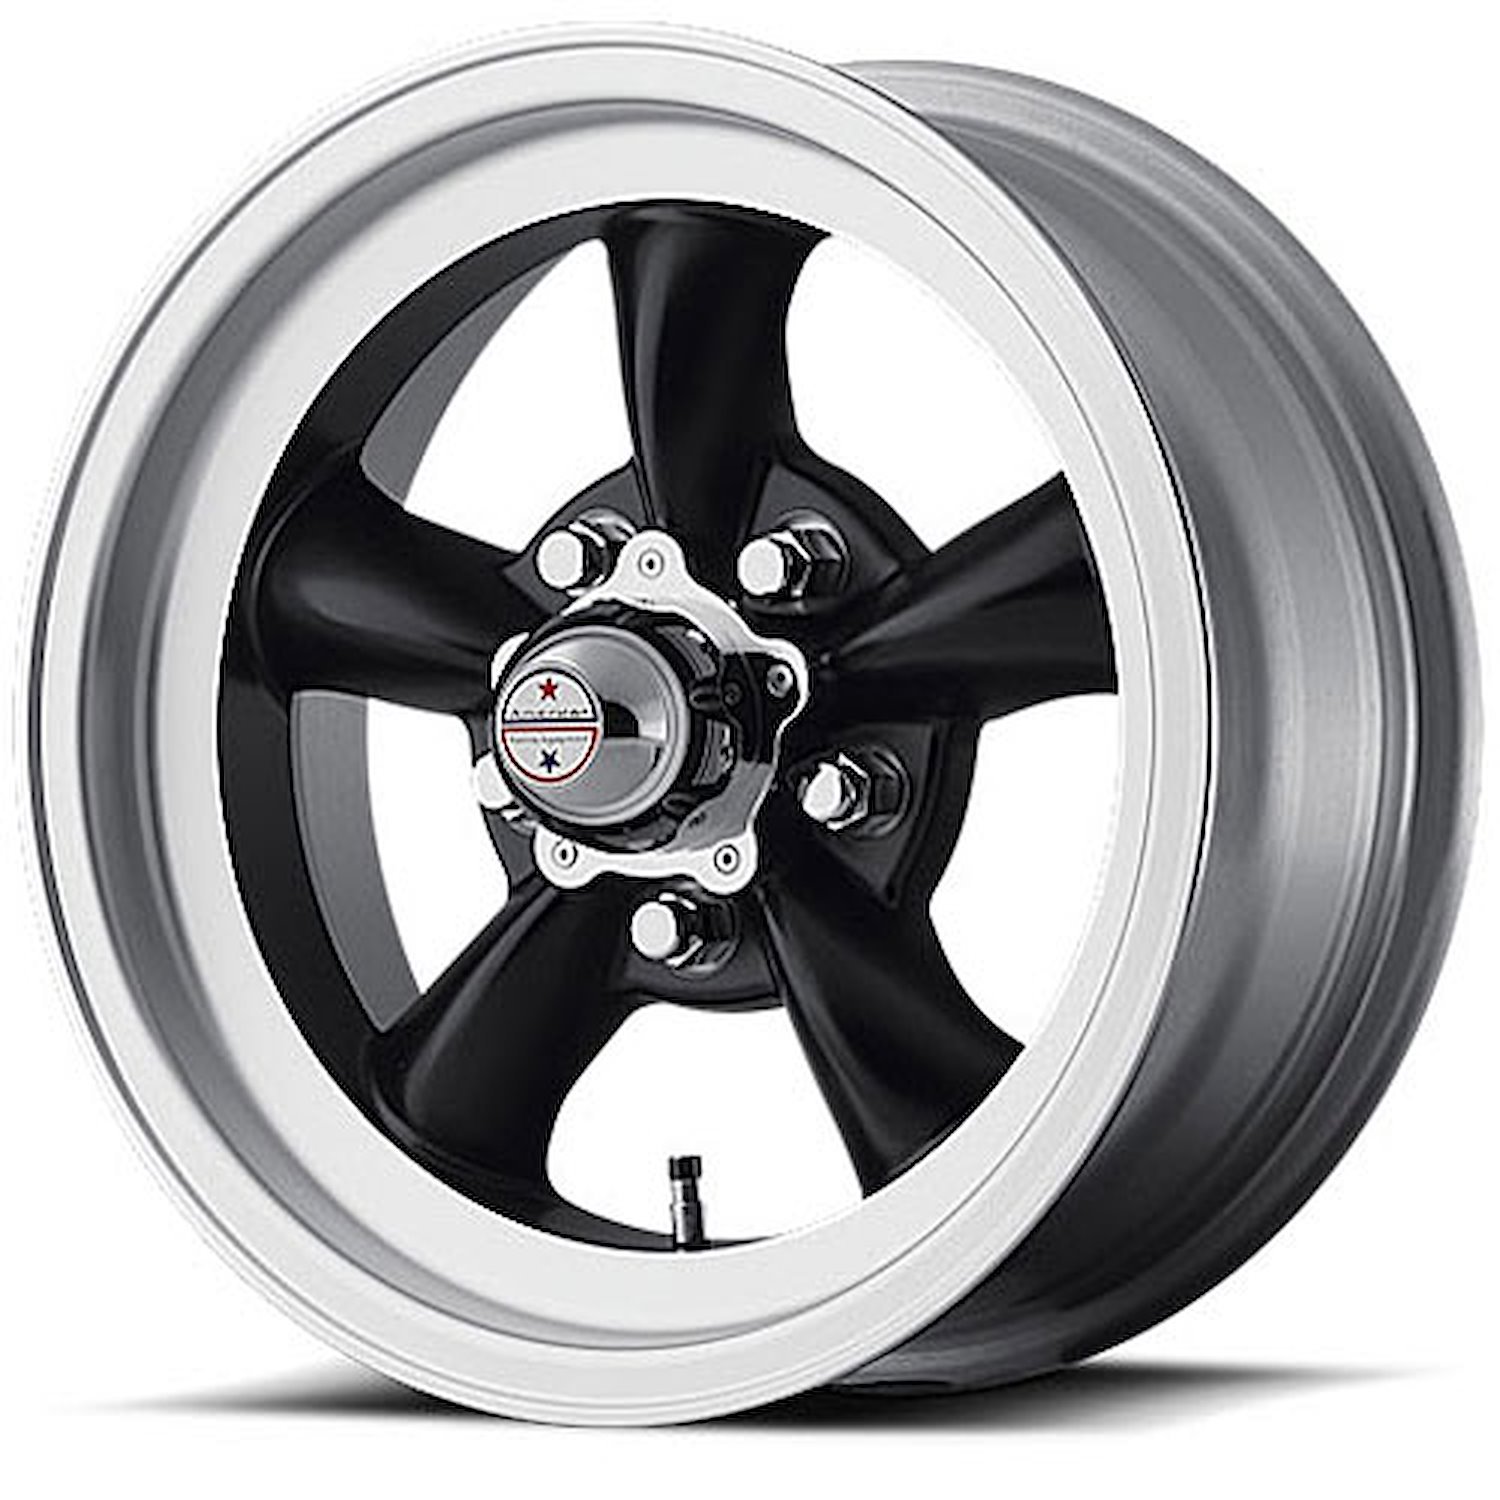 VN105D Series Torq-Thrust D Wheel Size: 15" x 4-1/2"